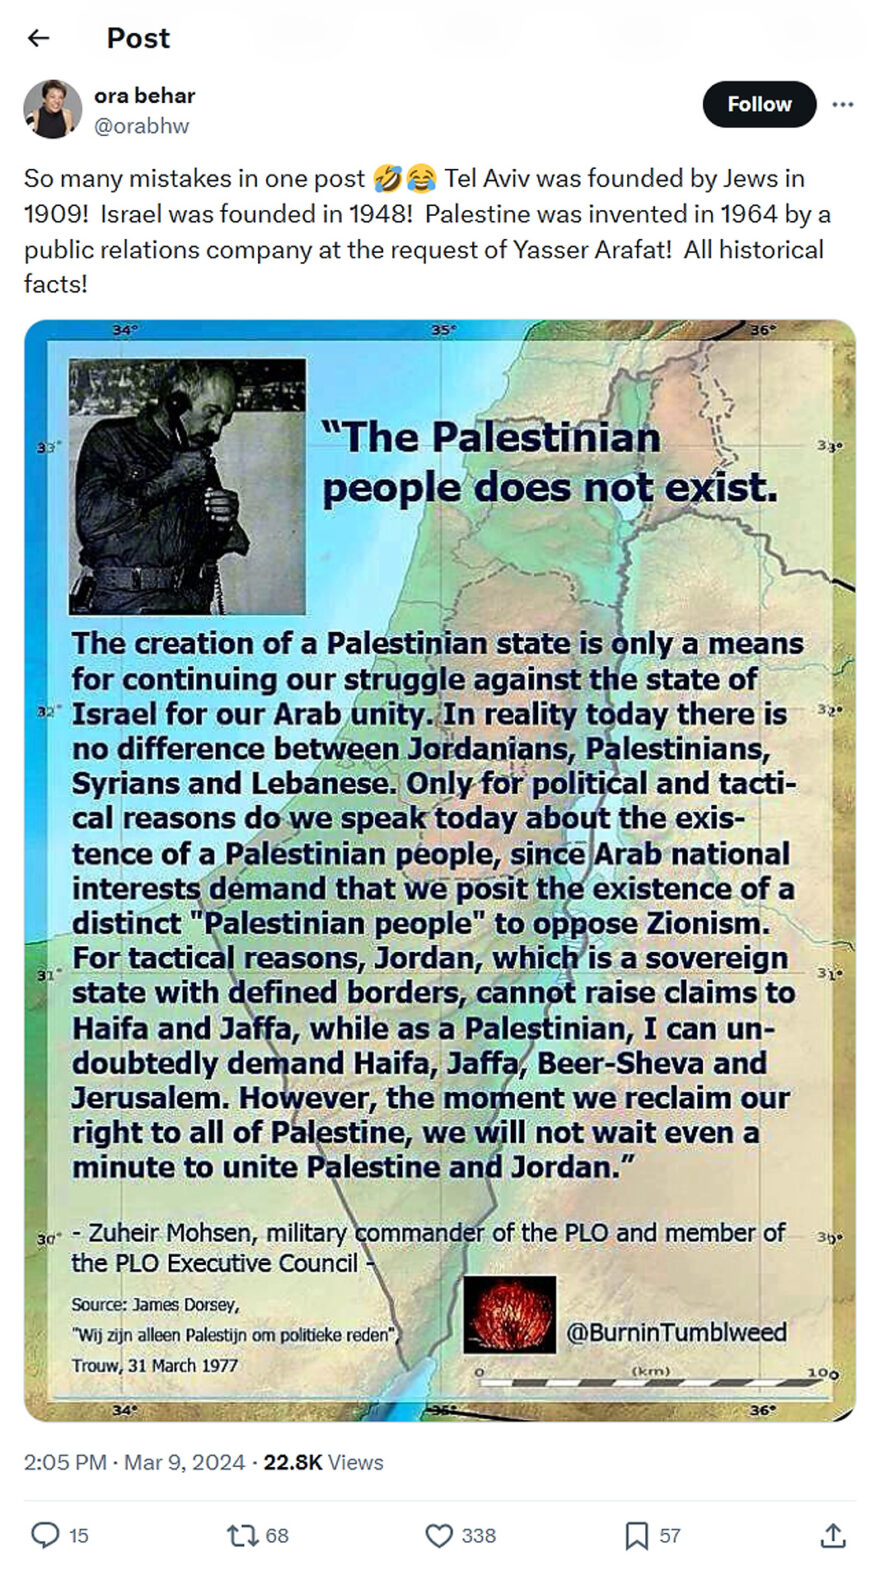 ora behar-tweet-9March2024-Palestine was invented in 1964